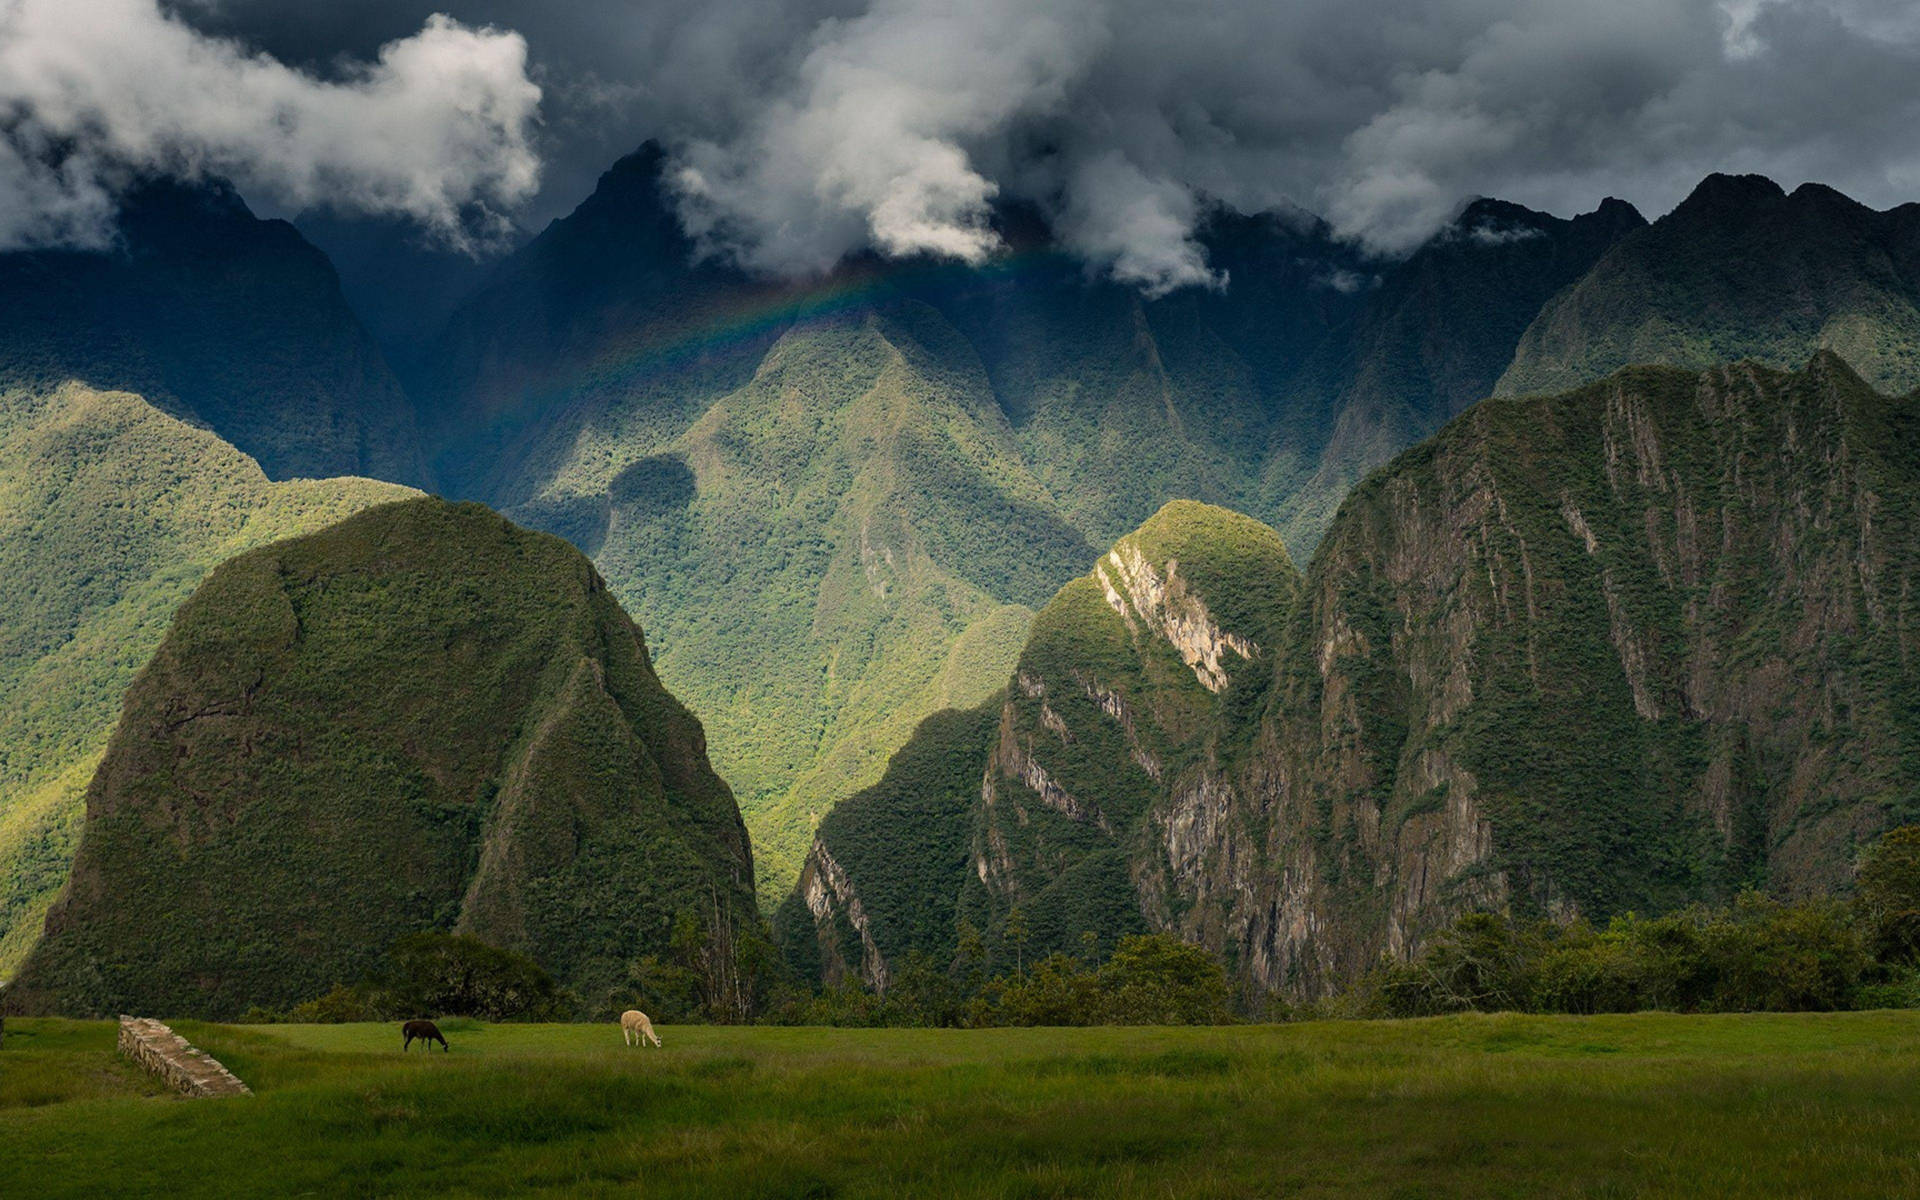 Caption: Majestic View Of Machu Picchu, Peru